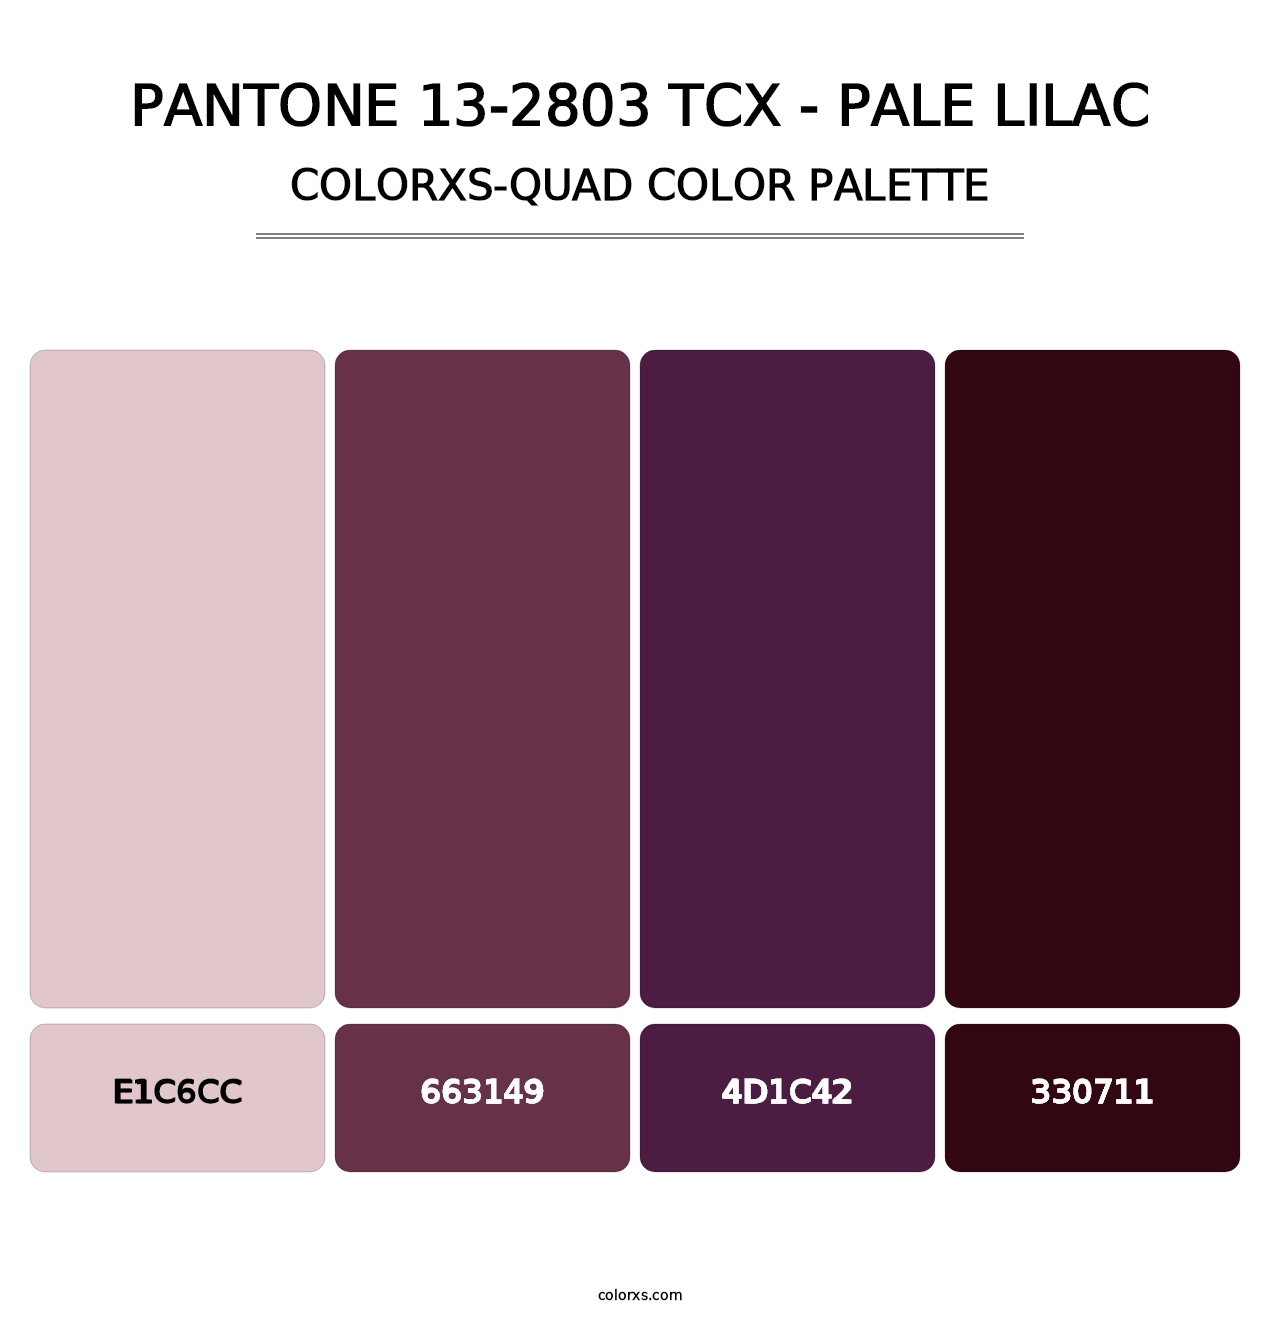 PANTONE 13-2803 TCX - Pale Lilac - Colorxs Quad Palette